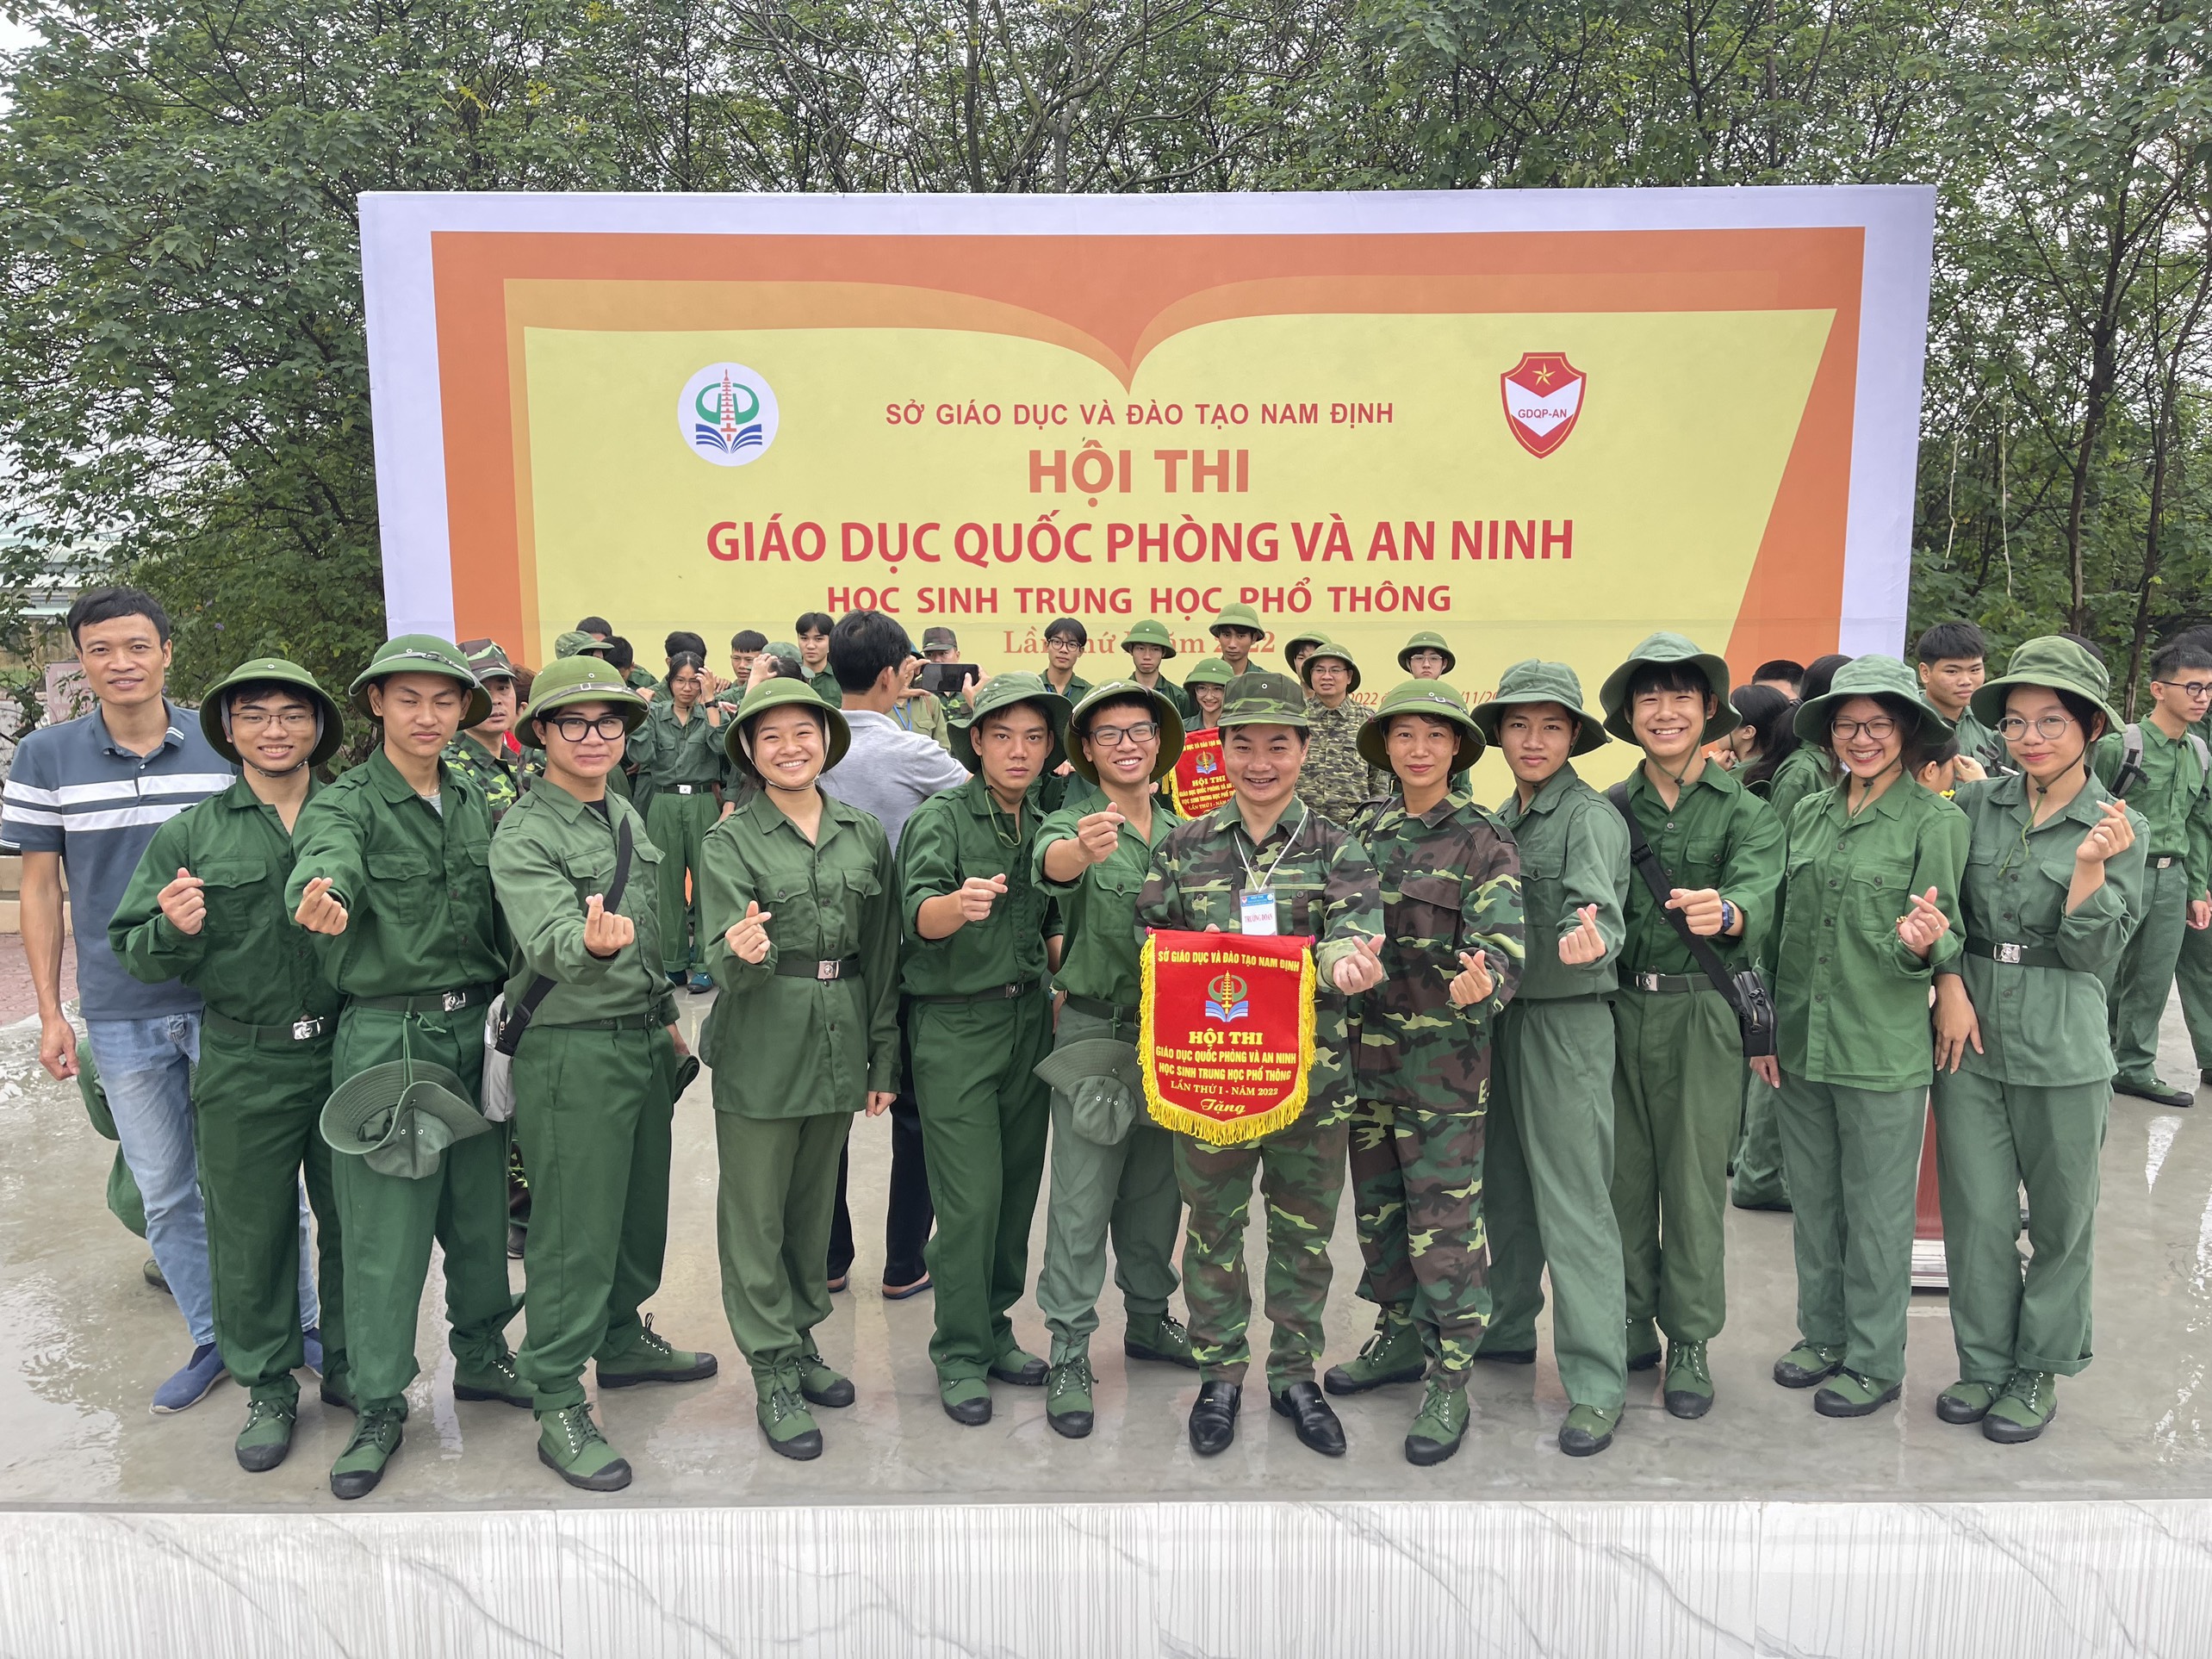 Trường THPT chuyên Lê Hồng Phong đạt thành tích xuất sắc tại Hội thi Giáo dục quốc phòng và an ninh học sinh THPT tỉnh lần thứ Nhất năm 2022.